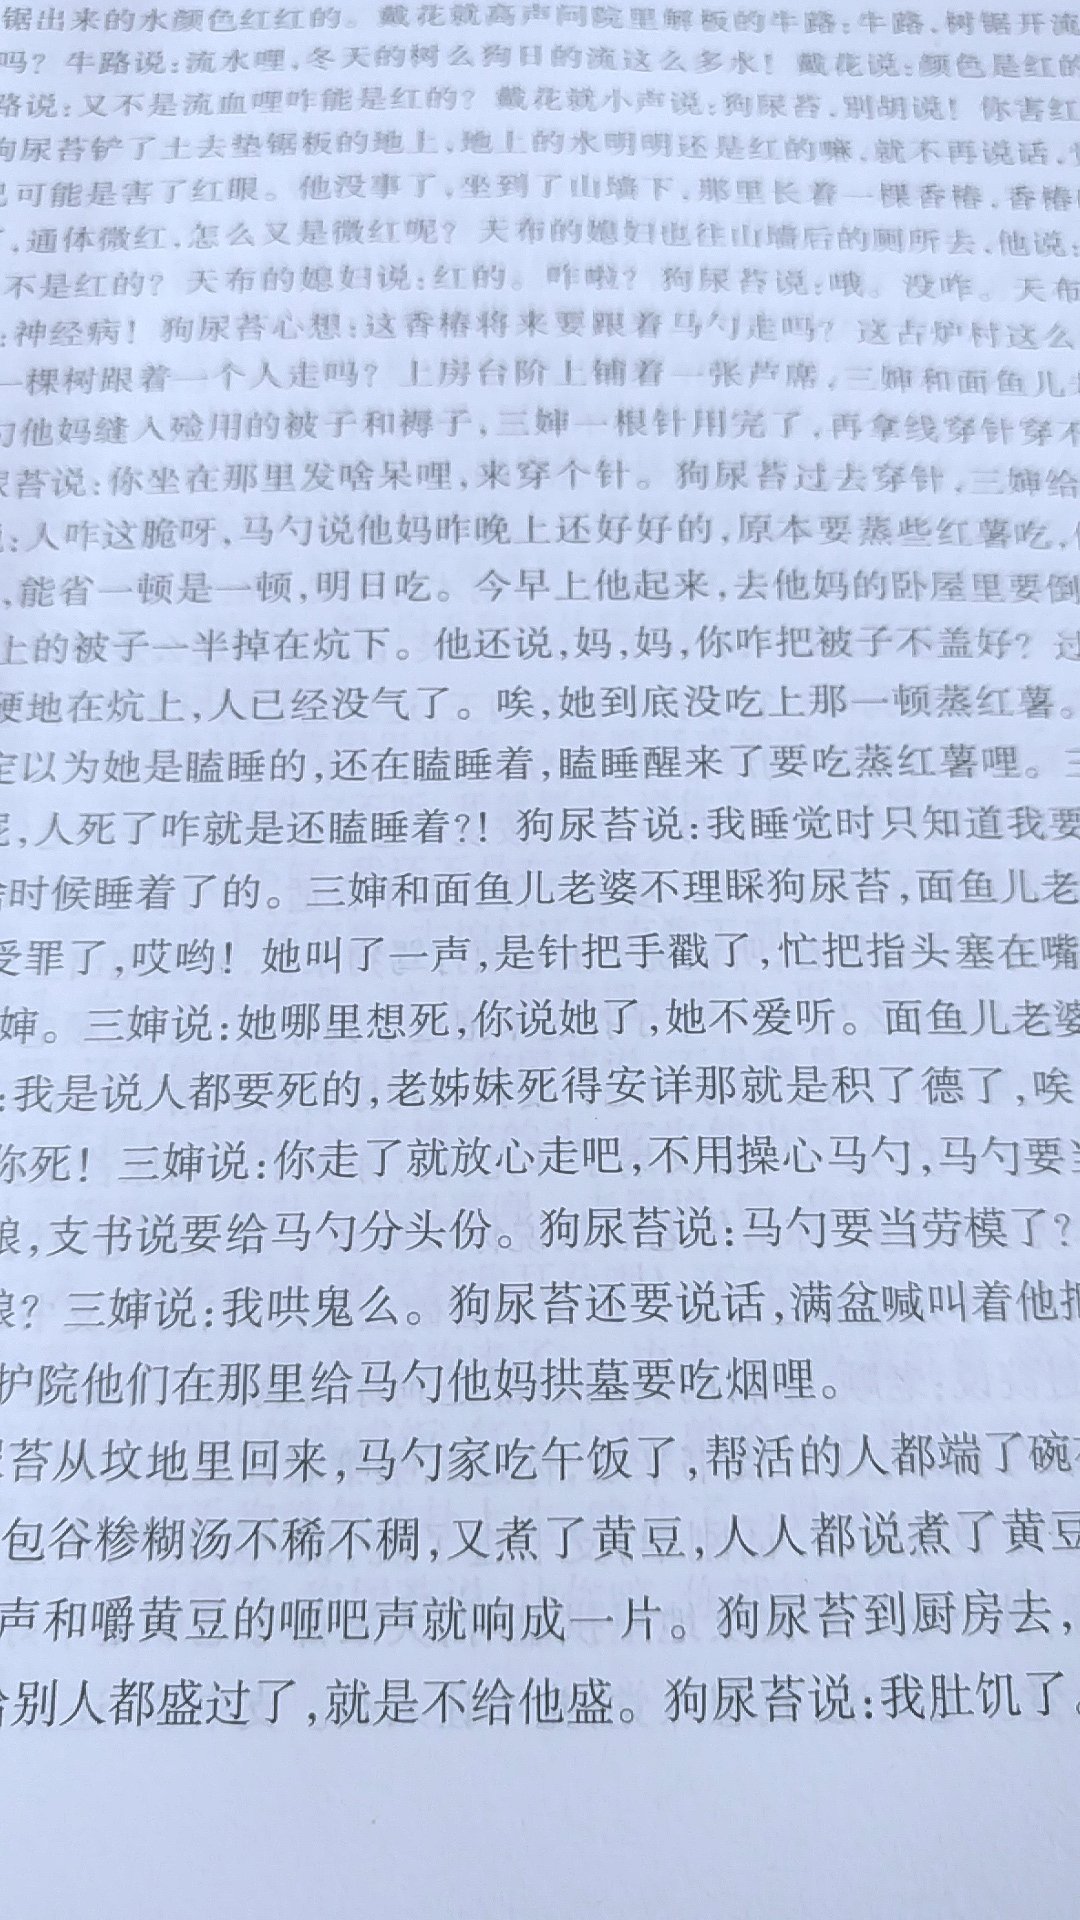 真实的生活细节，浑然一体的陕西风情，展示中国基层“**”的历史轨迹，人文解读历史大浩劫。